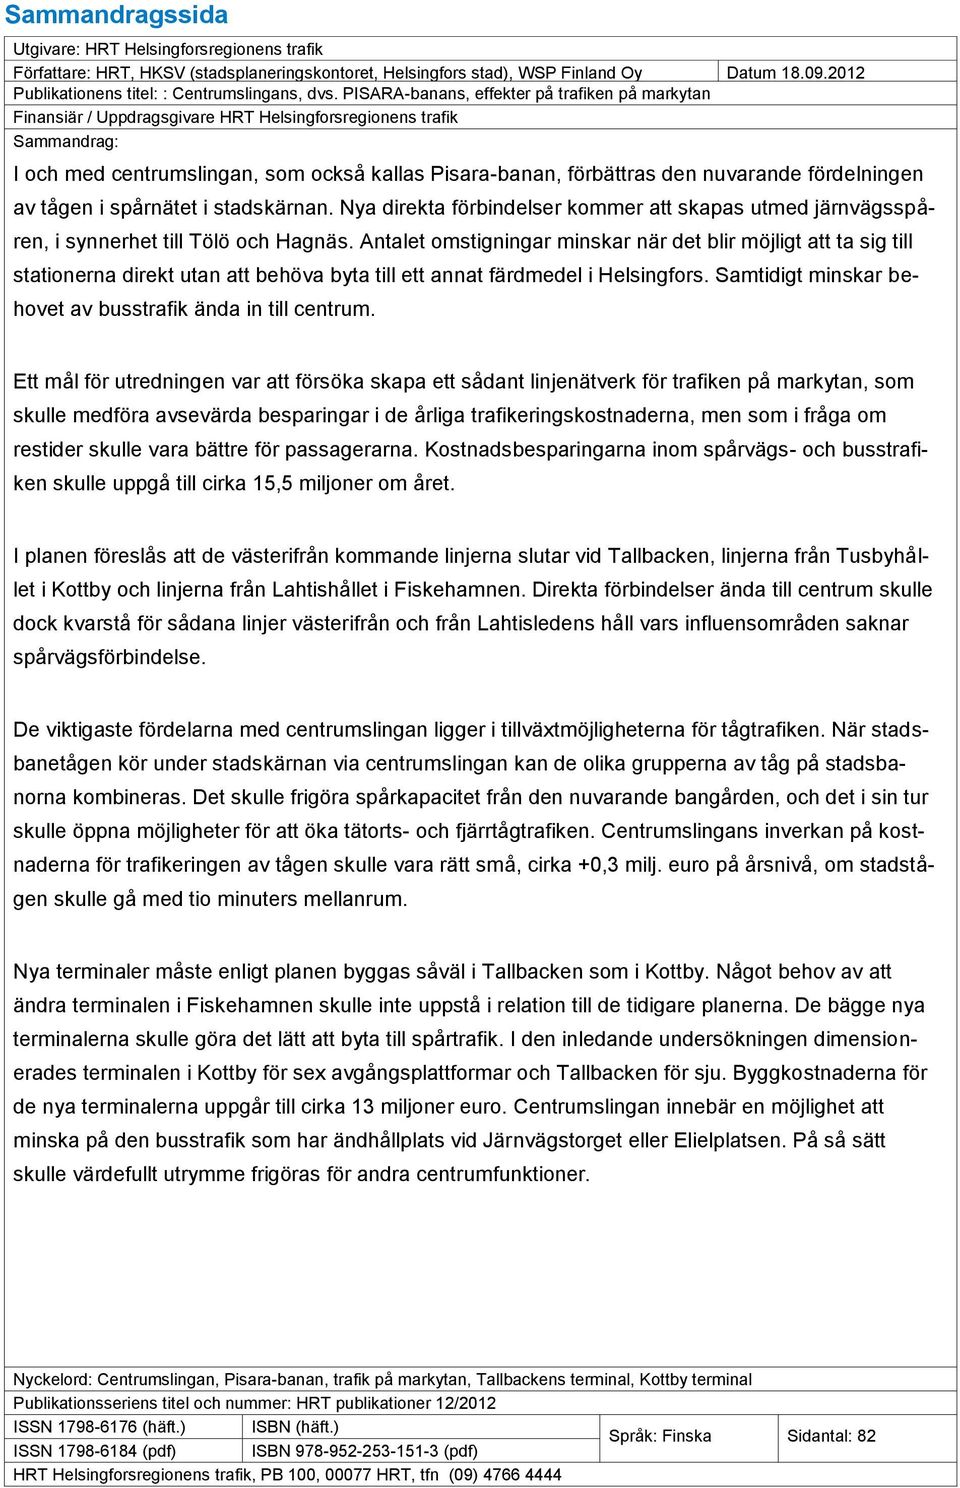 PISARA-banans, effekter på trafiken på markytan Finansiär / Uppdragsgivare HRT Helsingforsregionens trafik Sammandrag: I och med centrumslingan, som också kallas Pisara-banan, förbättras den